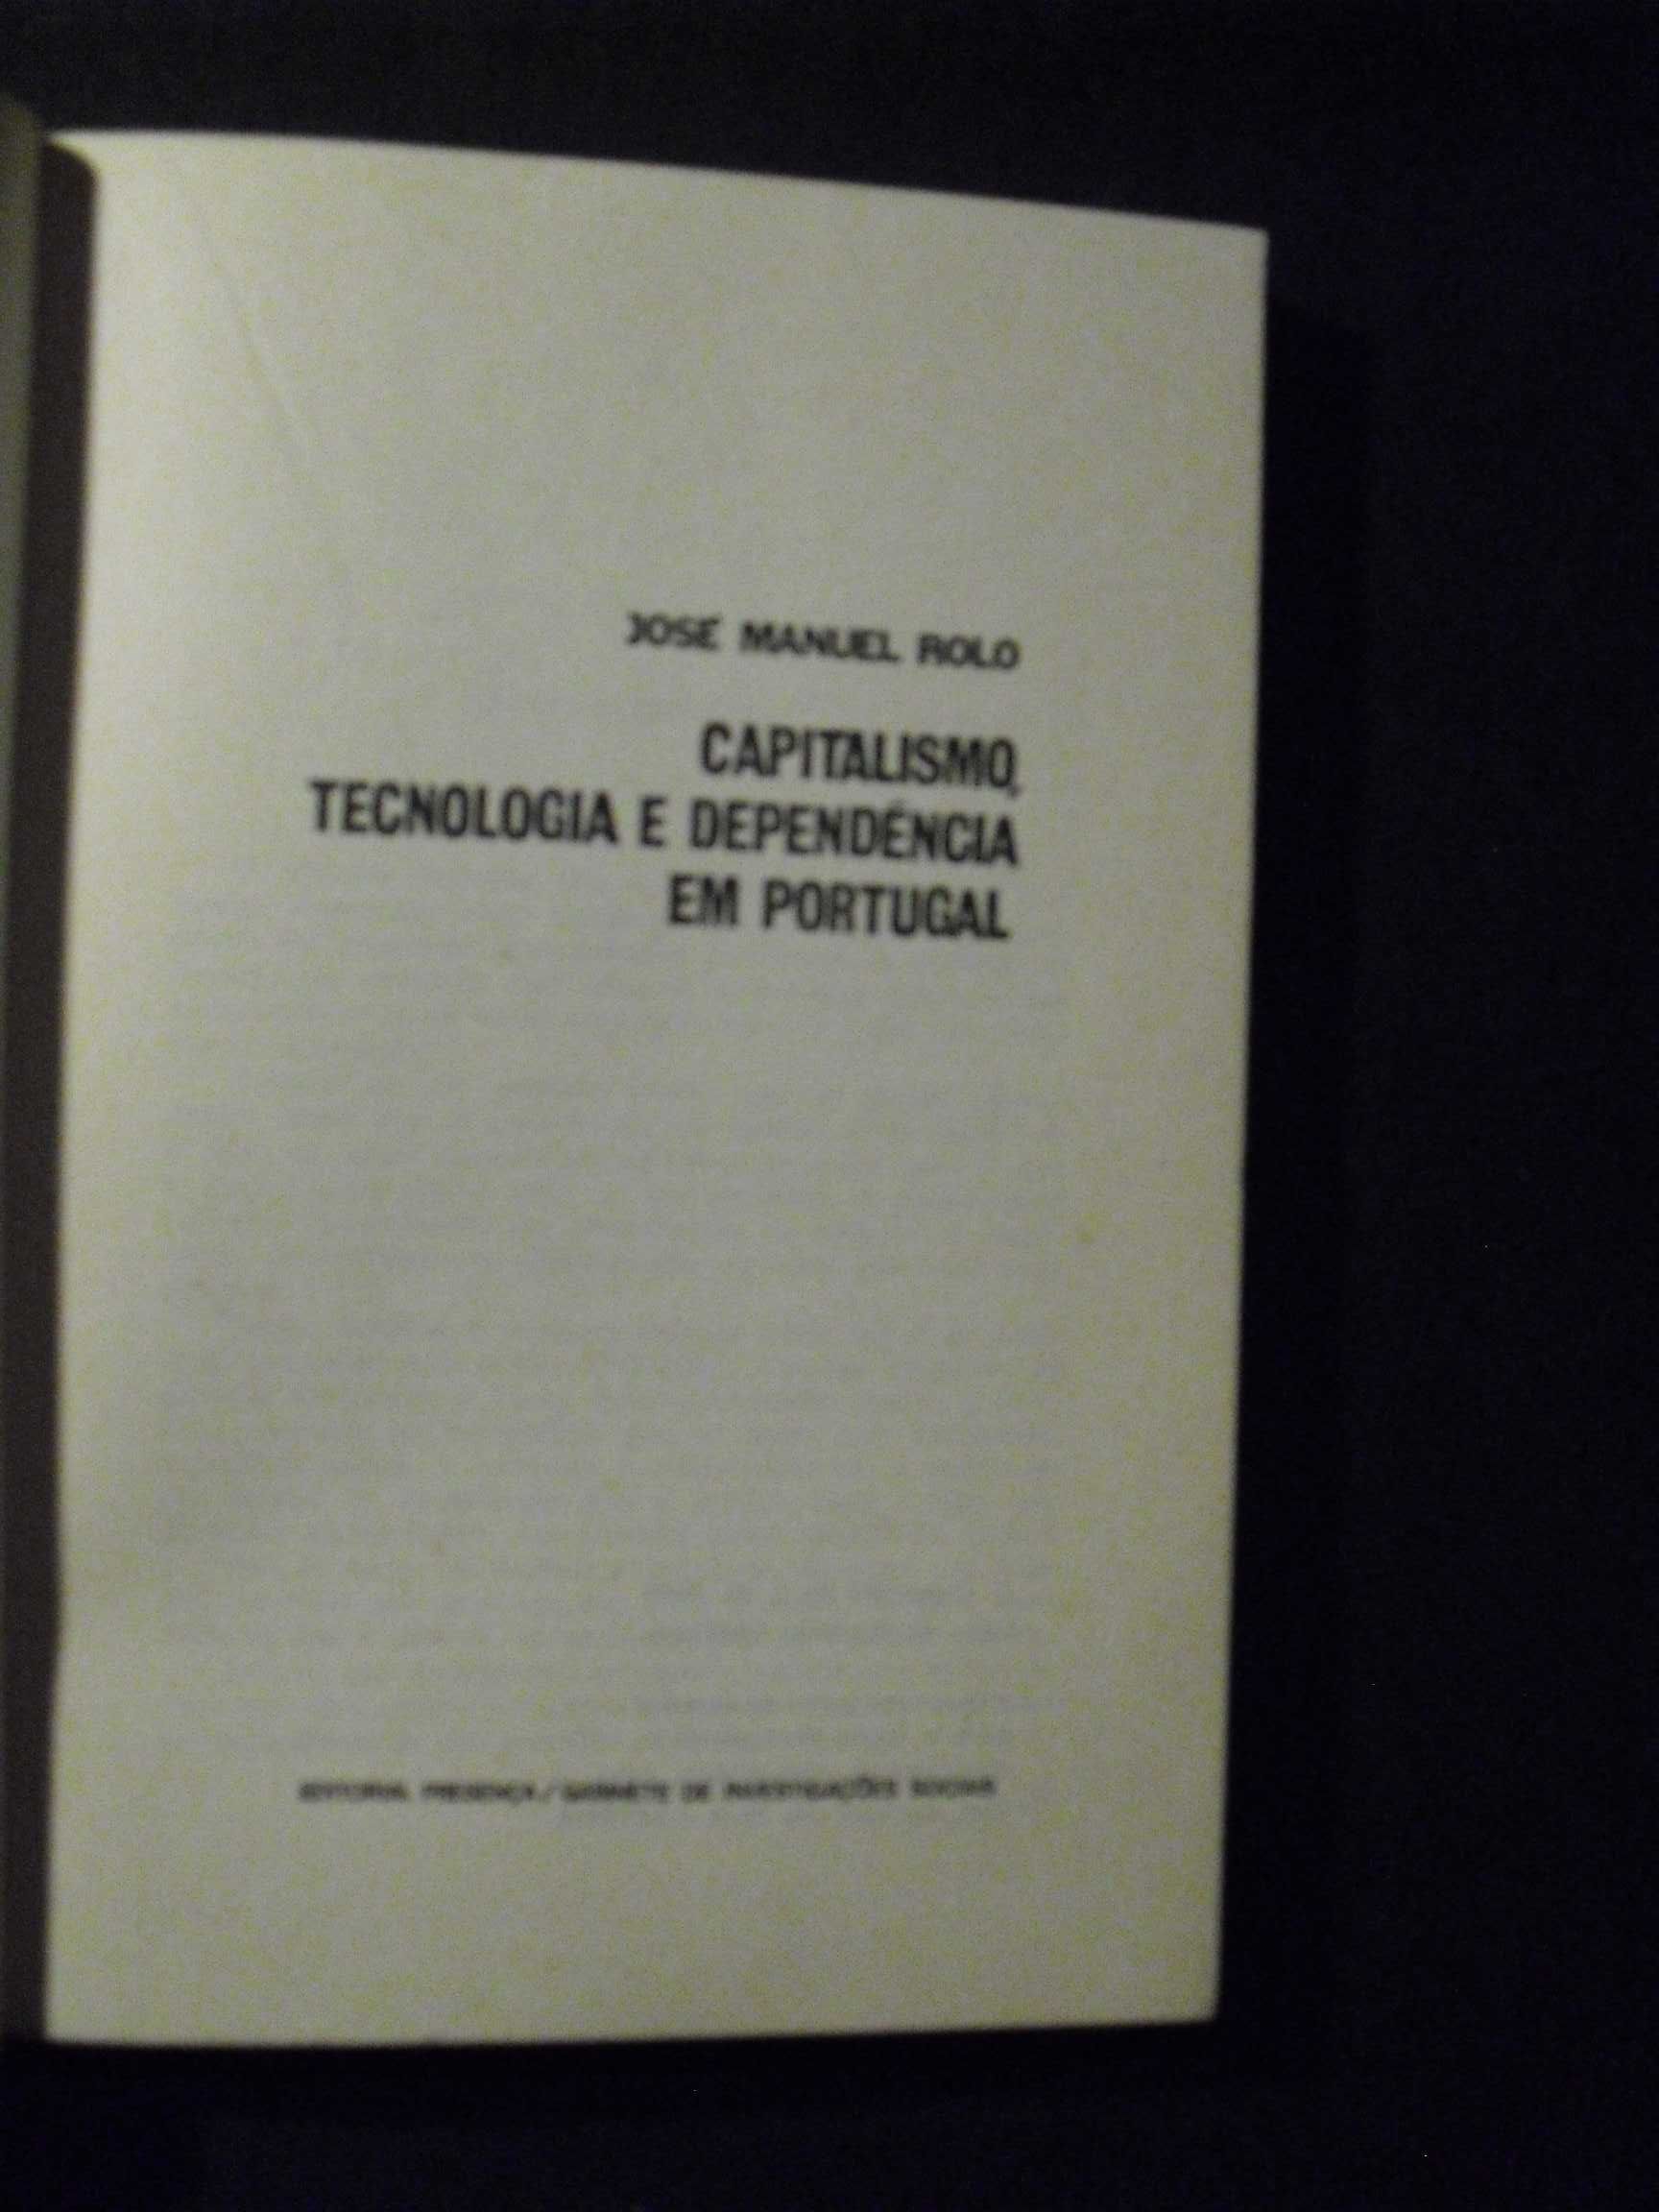 Rolo (José Manuel);Capitalismo,Tecnologia e Dependência em Portugal